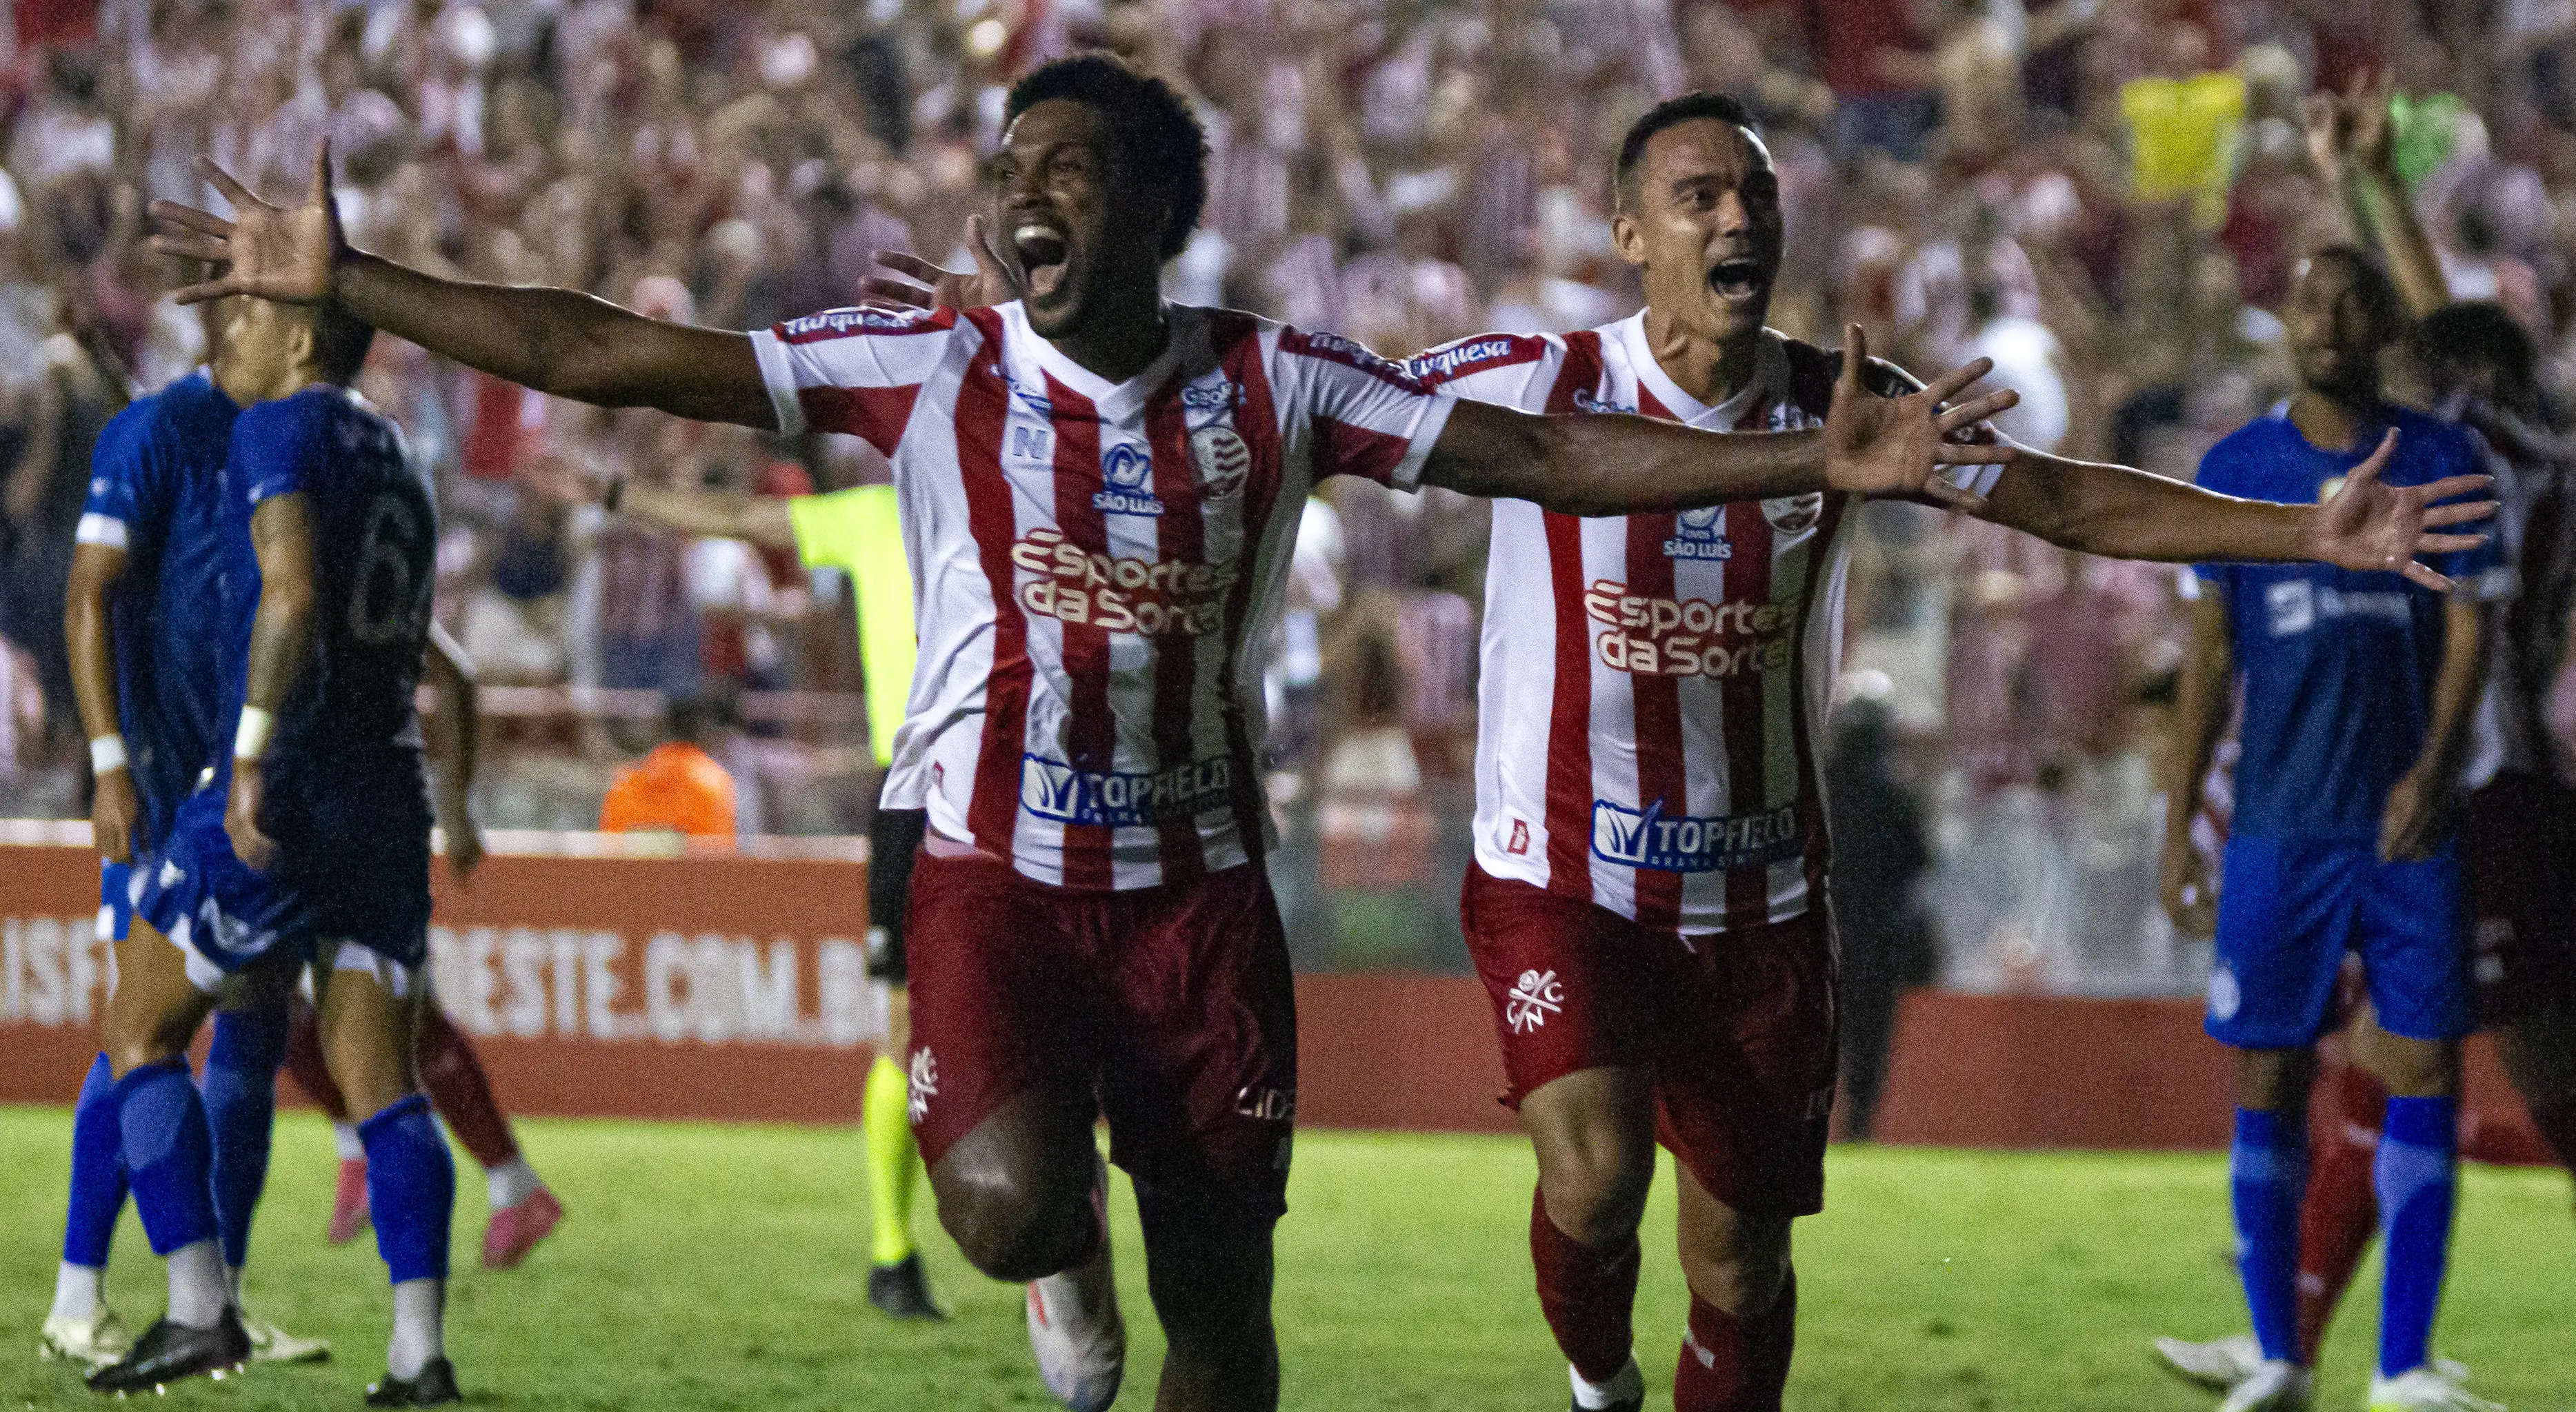 Imagem do atacante Bruno Mezenga comemorando gol no jogo entre Náutico x Confiança